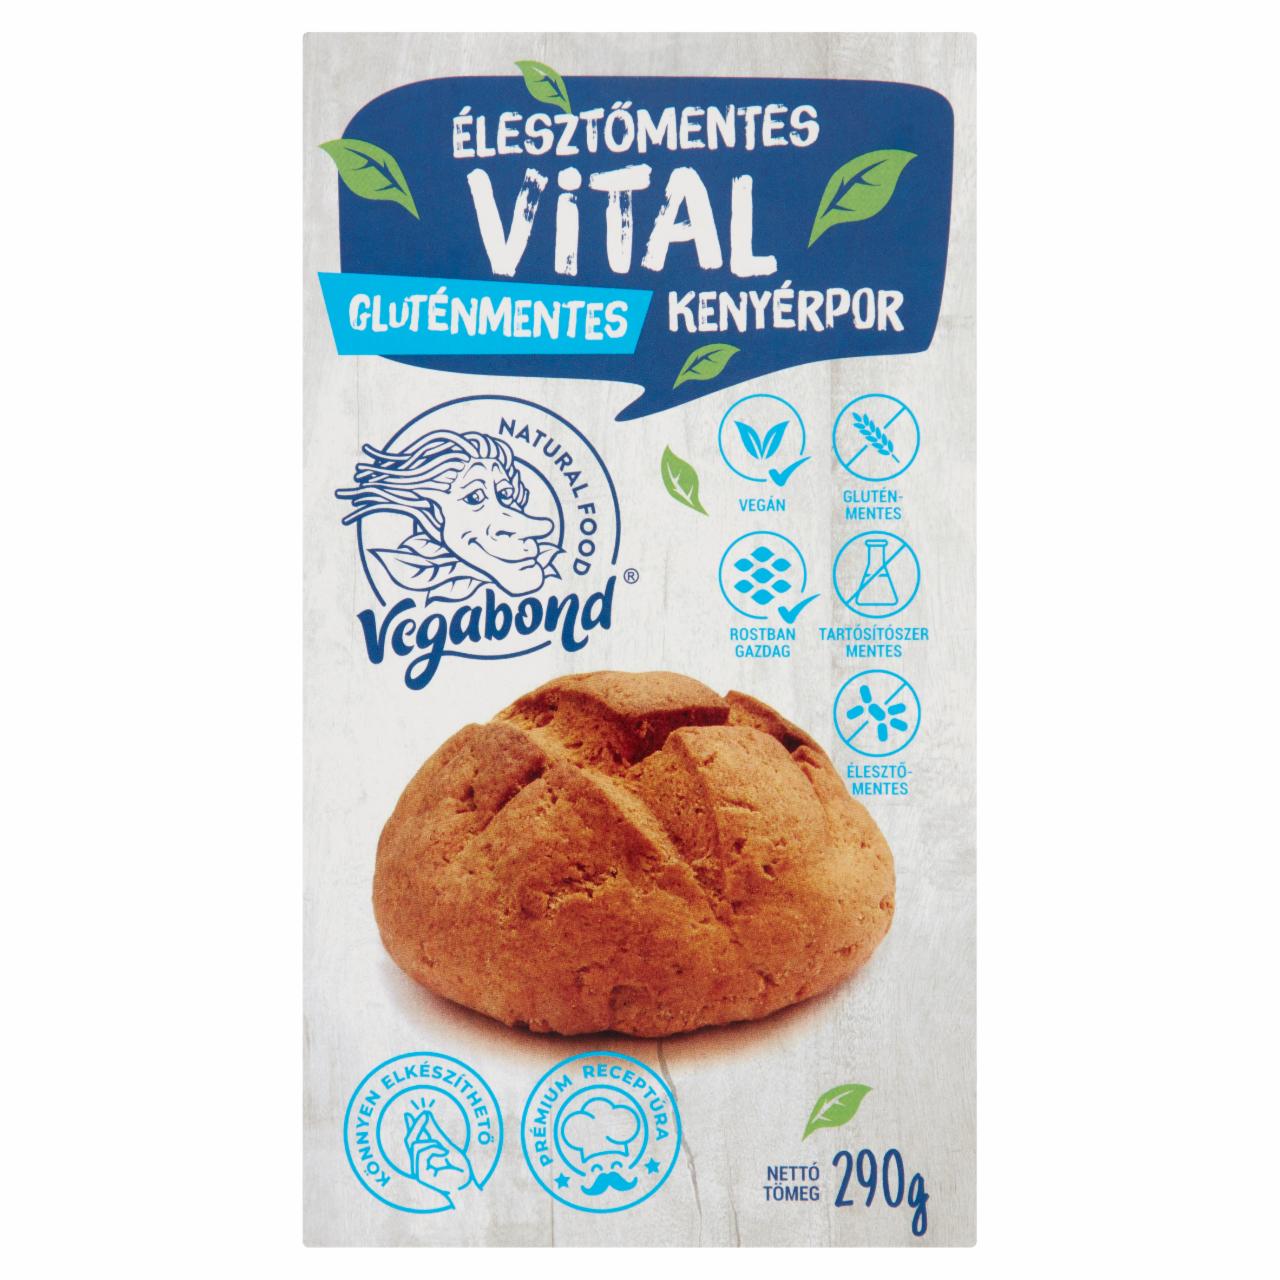 Képek - Vegabond gluténmentes, élesztőmentes vital kenyérpor 290 g